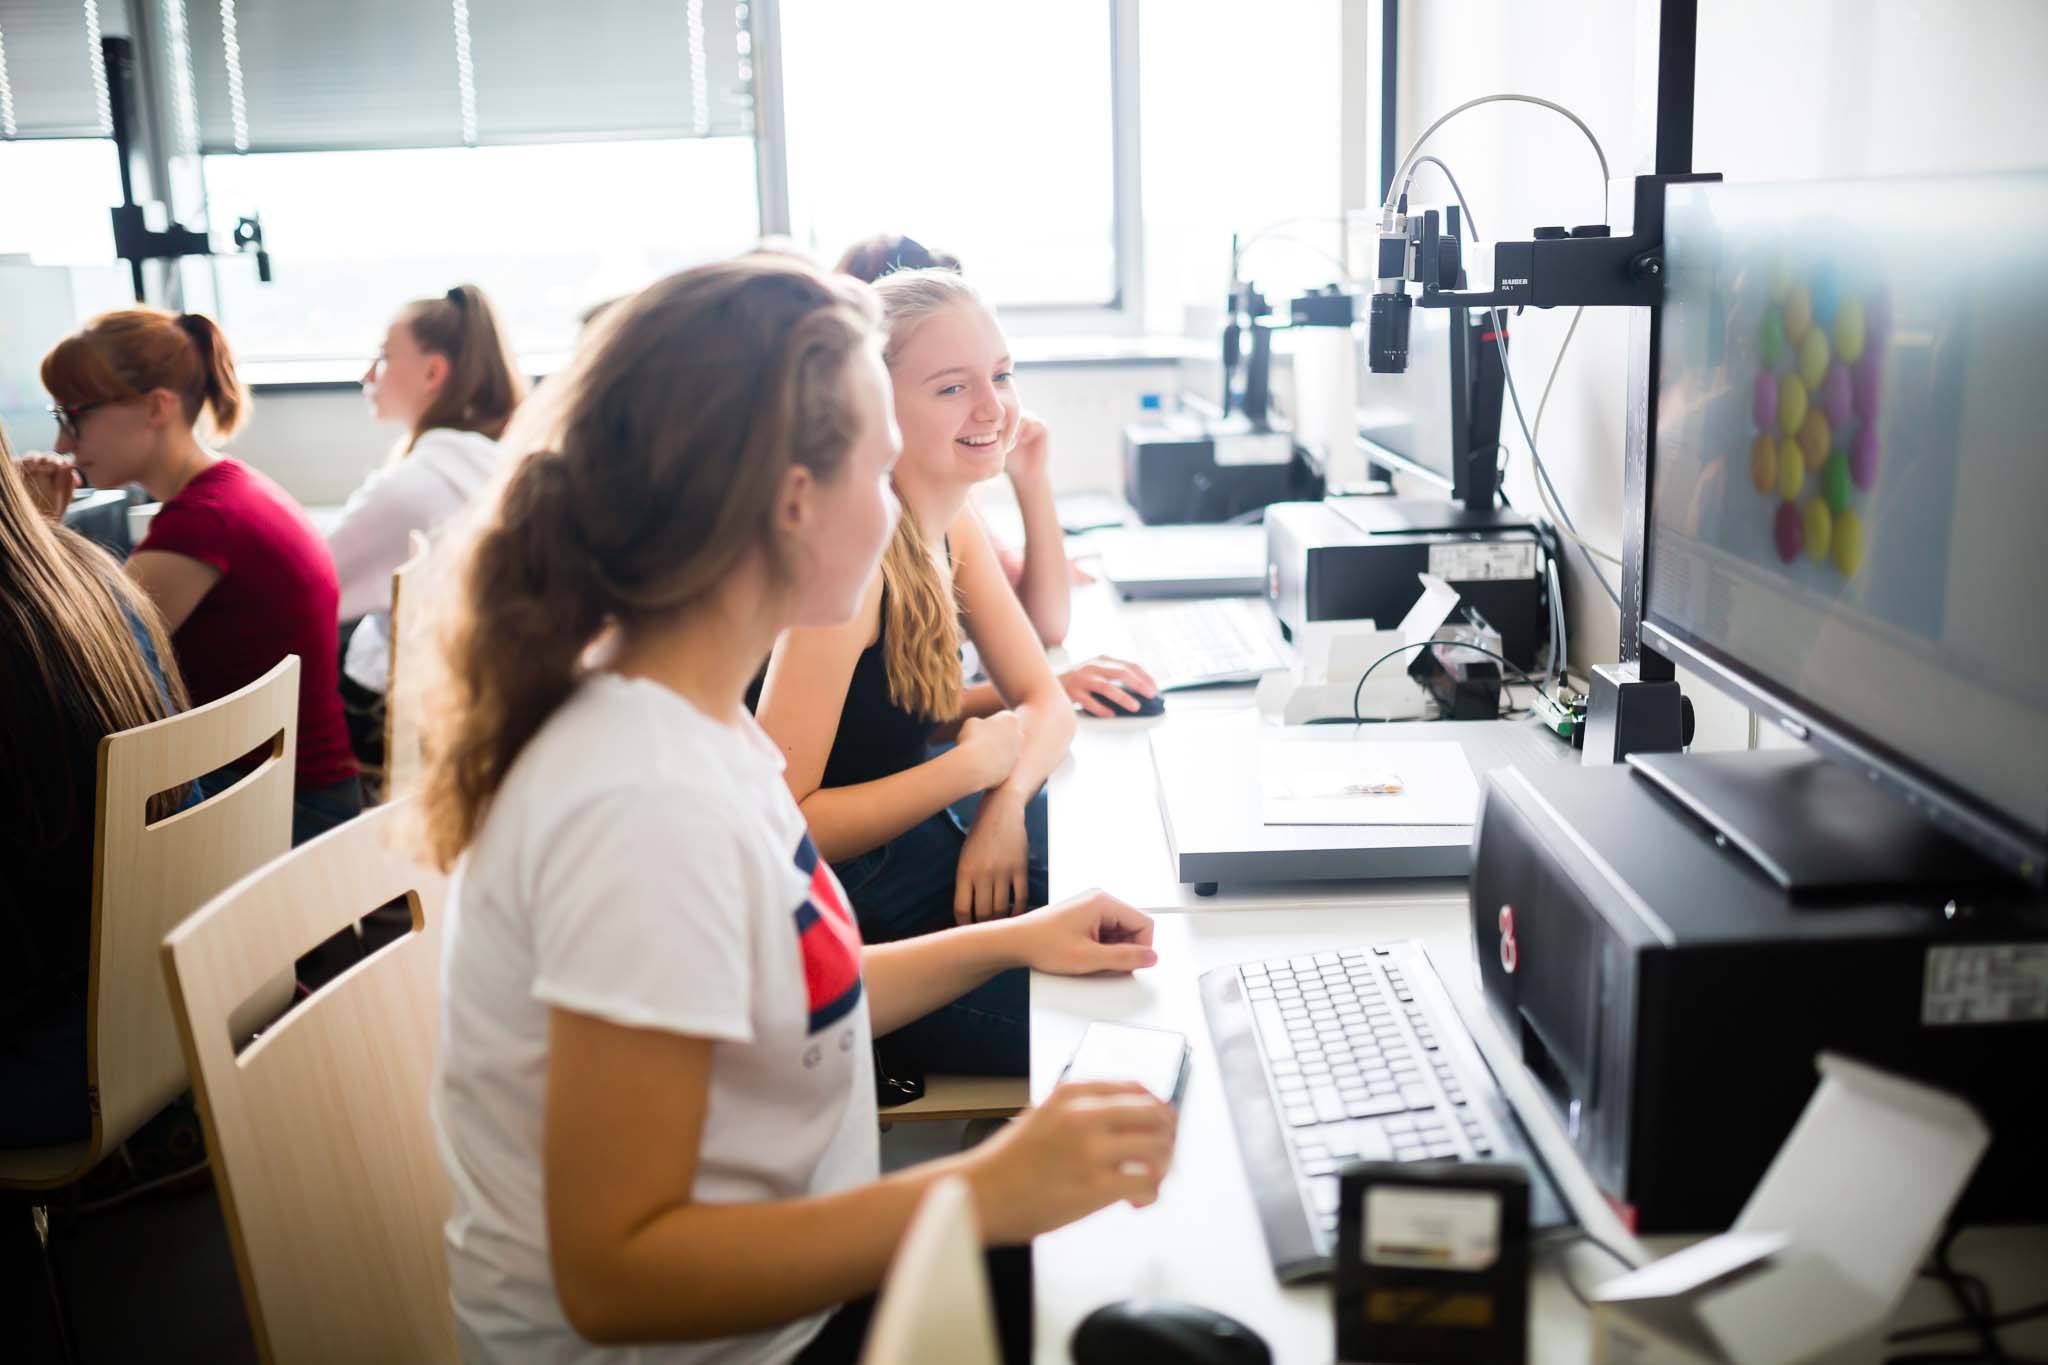 Чешский технический университет в Праге проводит летние IT-школы для девушек, цель – привлечь на технические специальности большее количество студенток